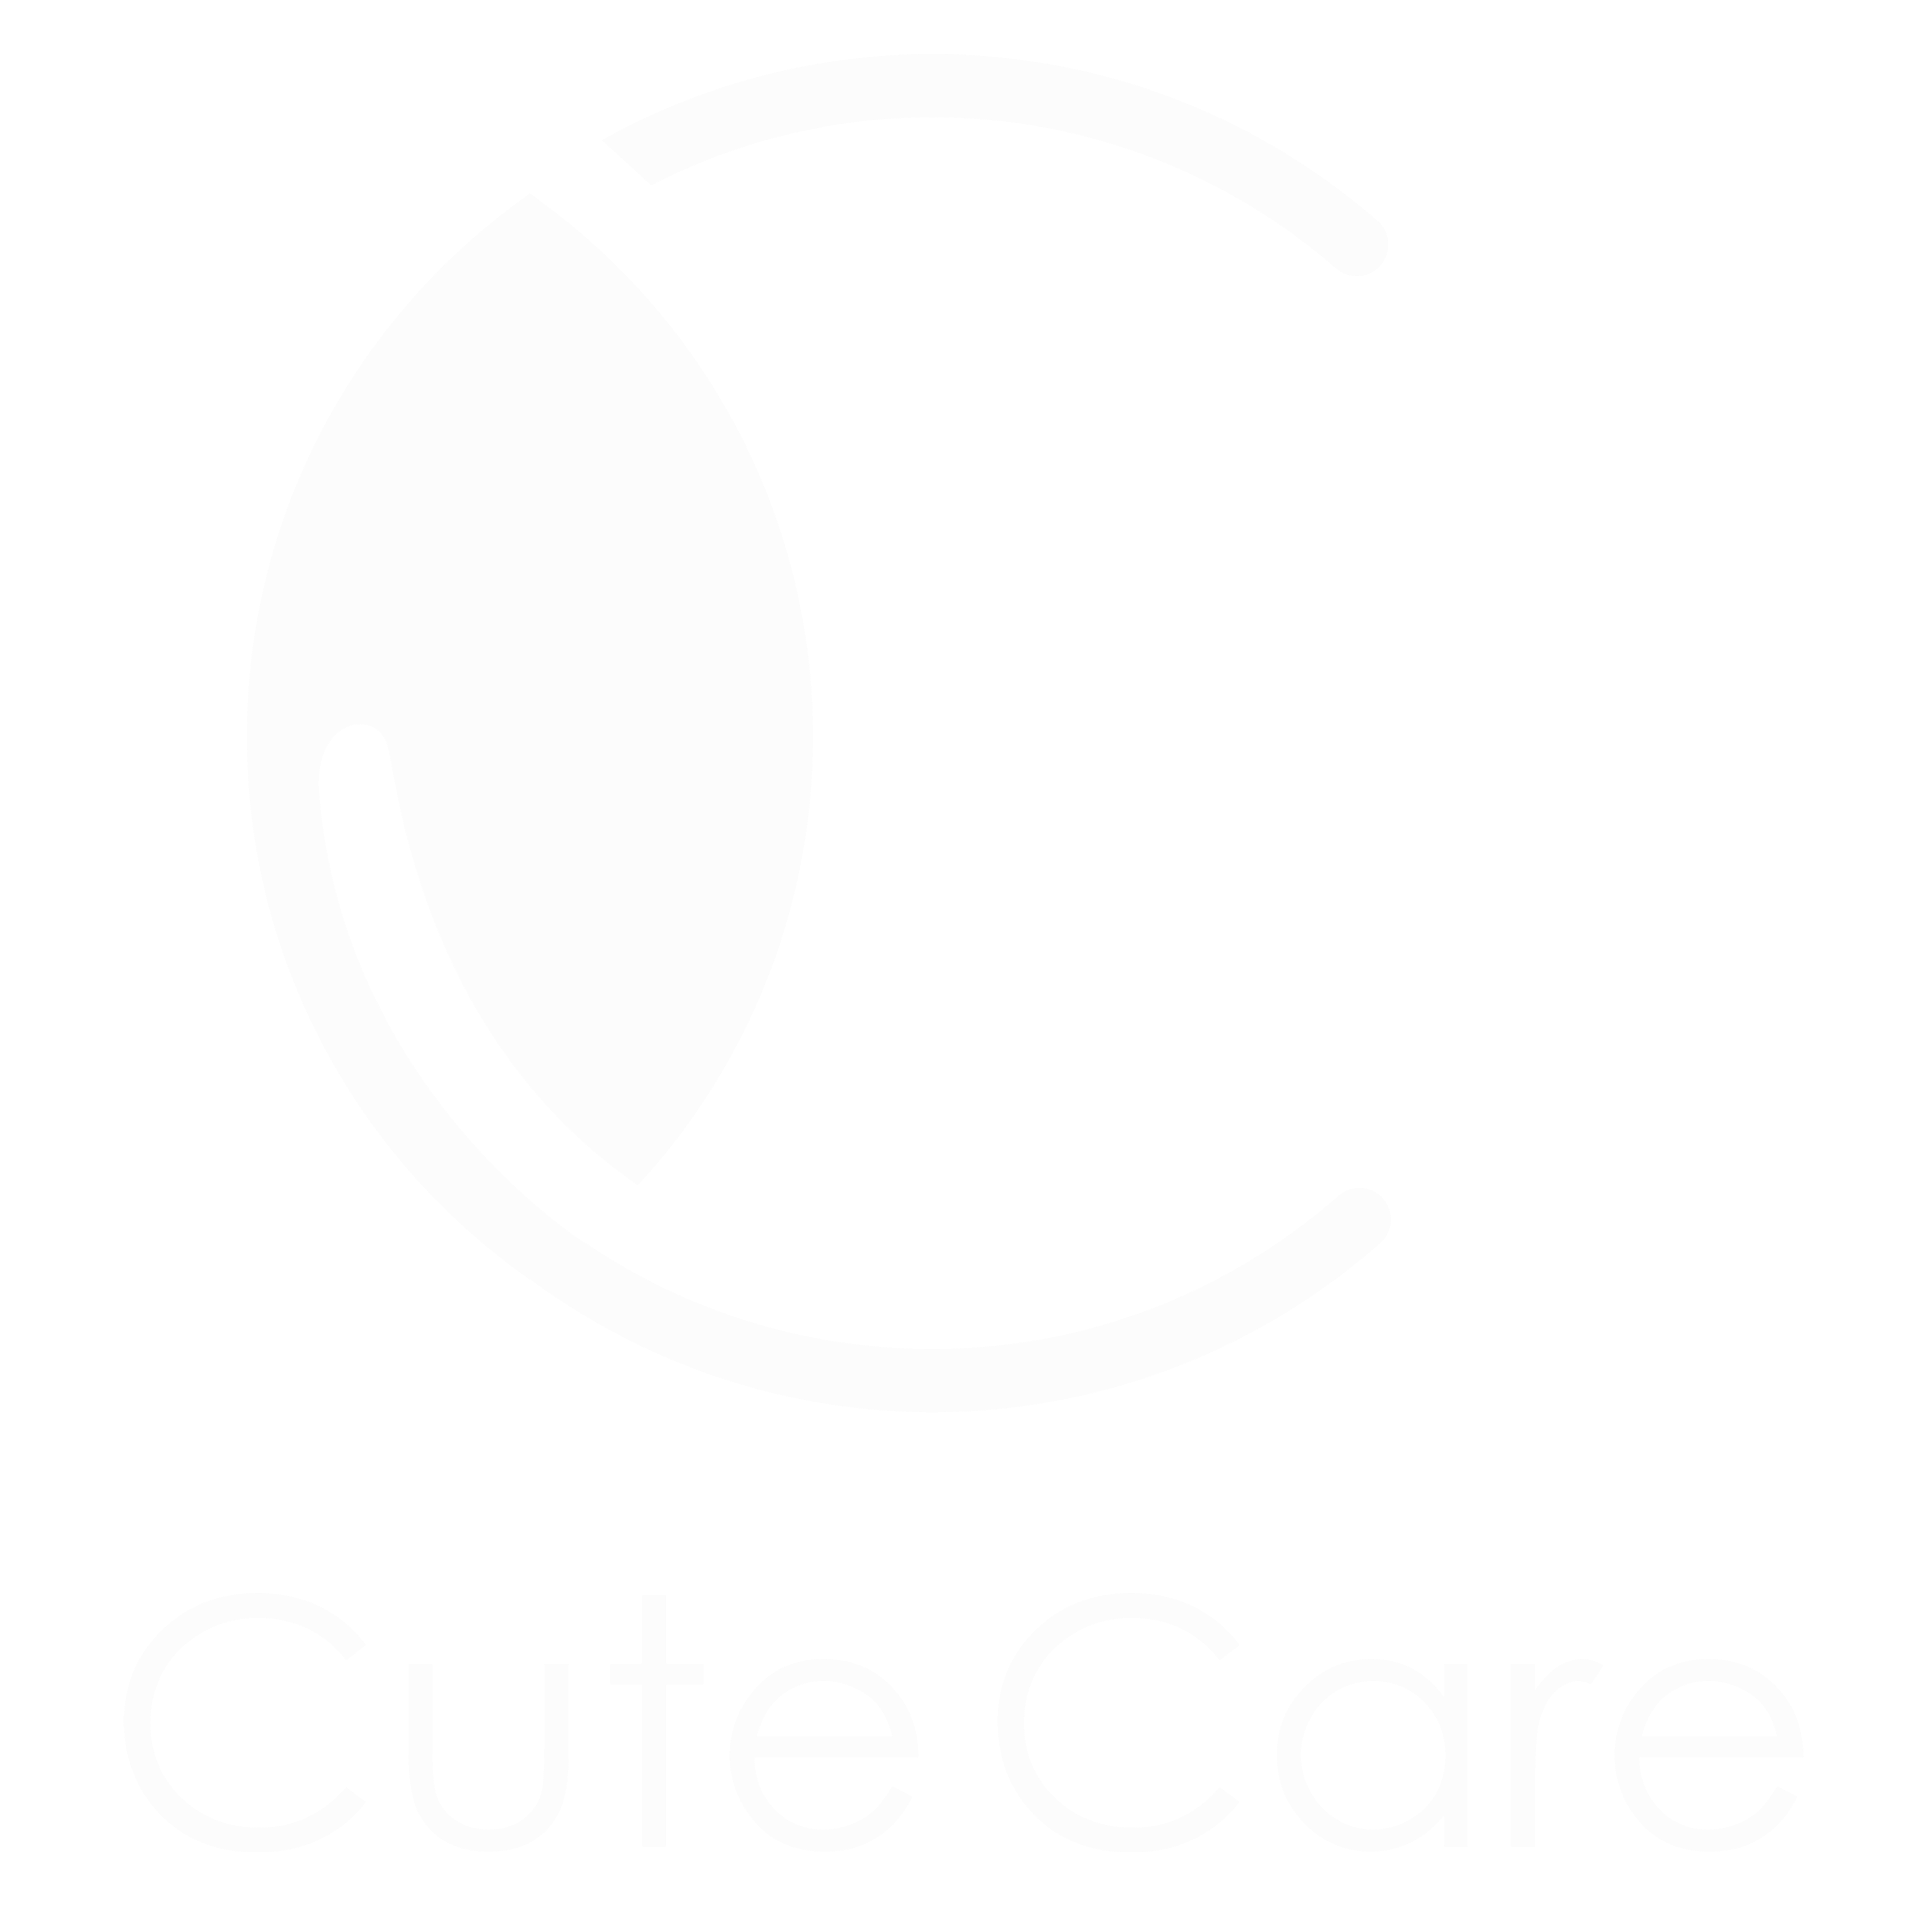 trycutecare.com